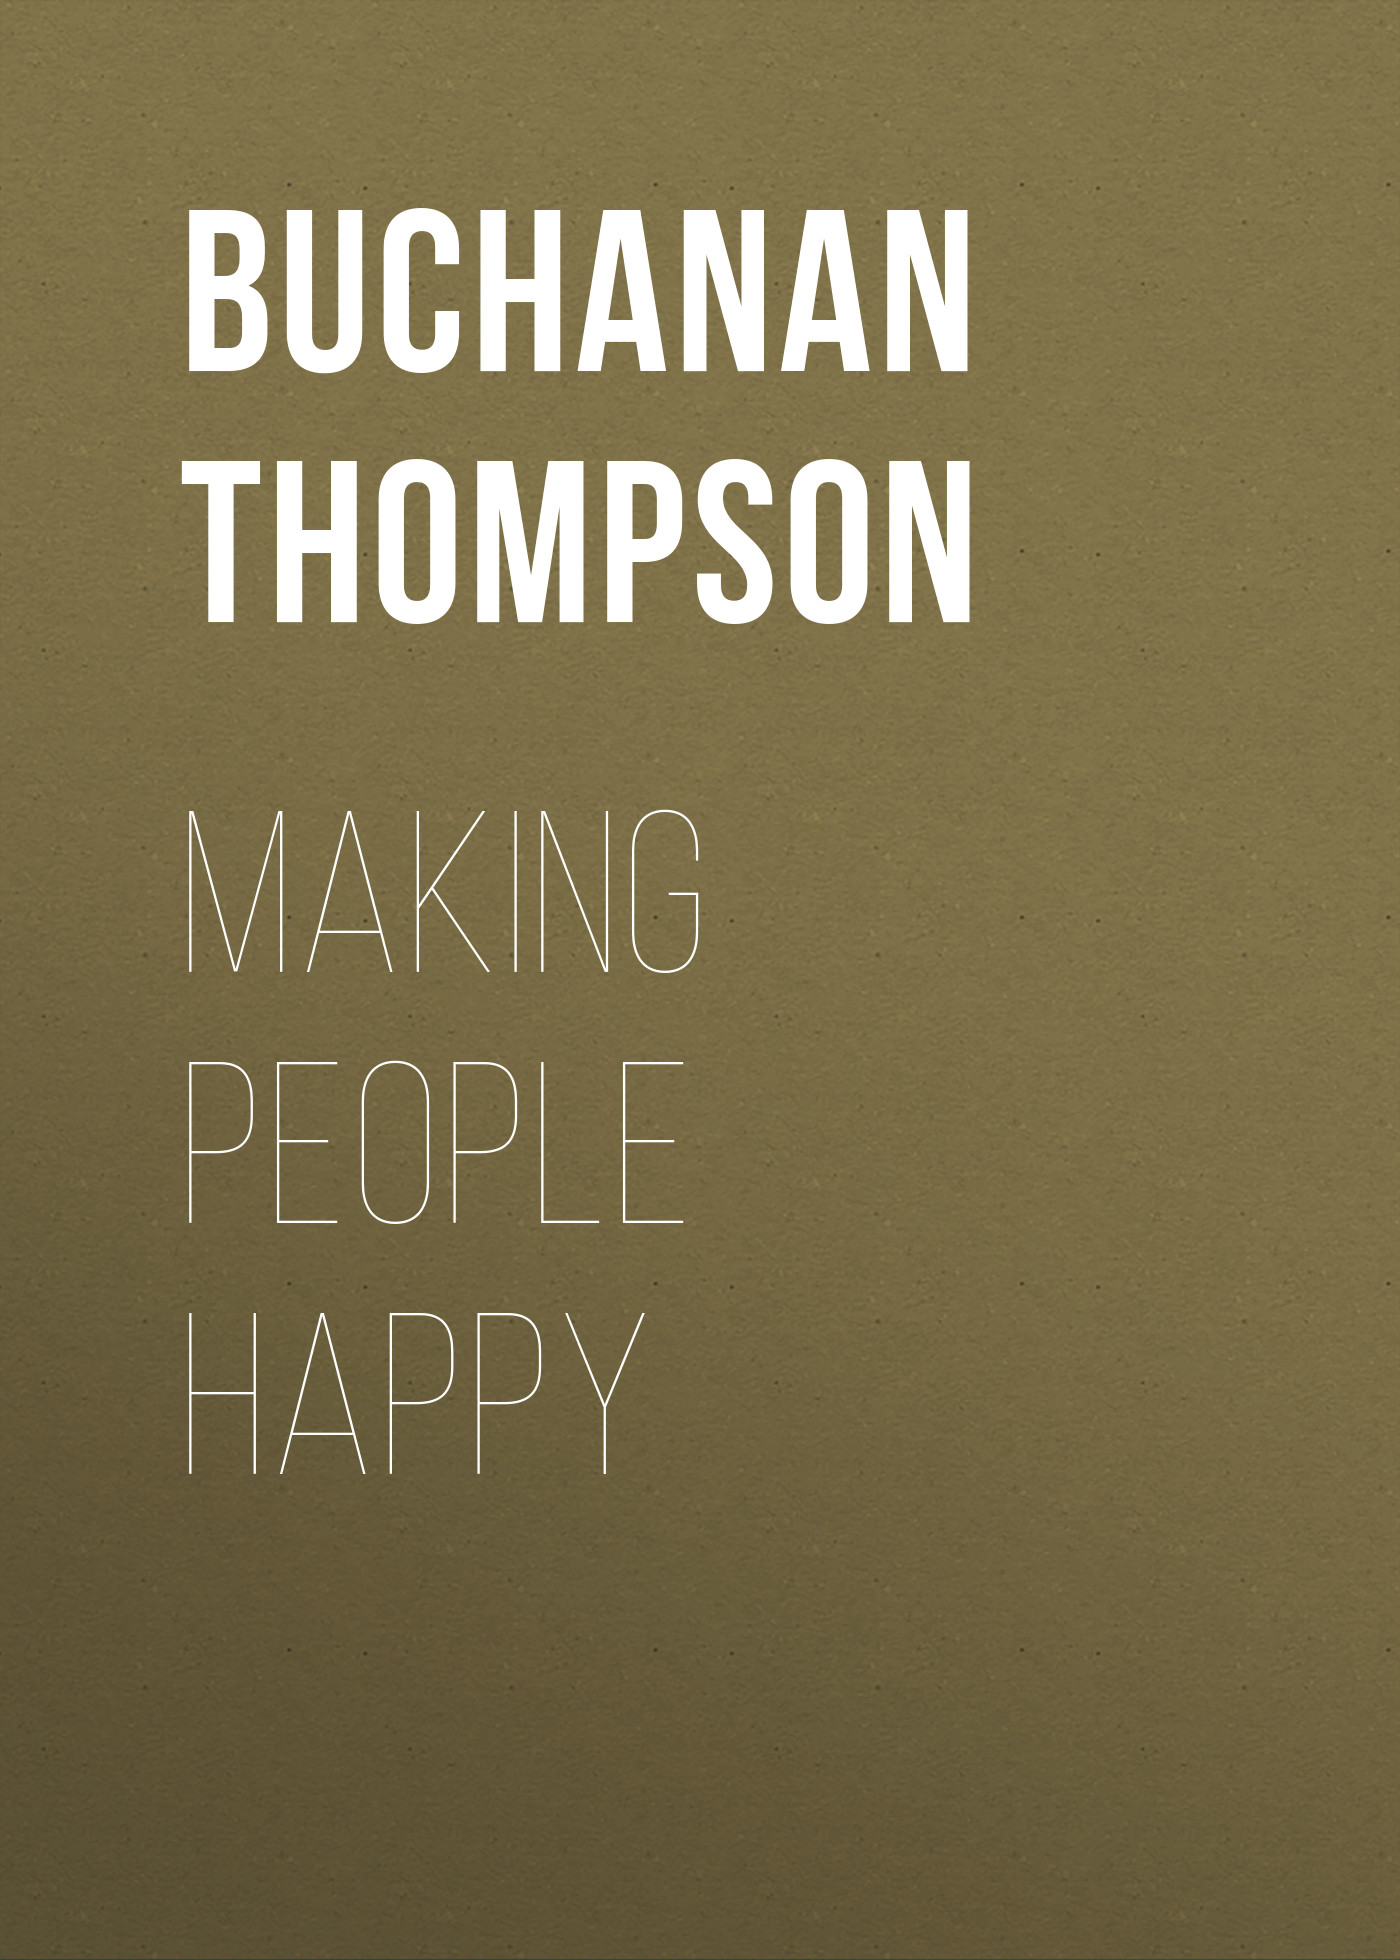 Книга Making People Happy из серии , созданная Buchanan Thompson, может относится к жанру Зарубежная старинная литература, Зарубежная классика. Стоимость электронной книги Making People Happy с идентификатором 24173036 составляет 0.90 руб.